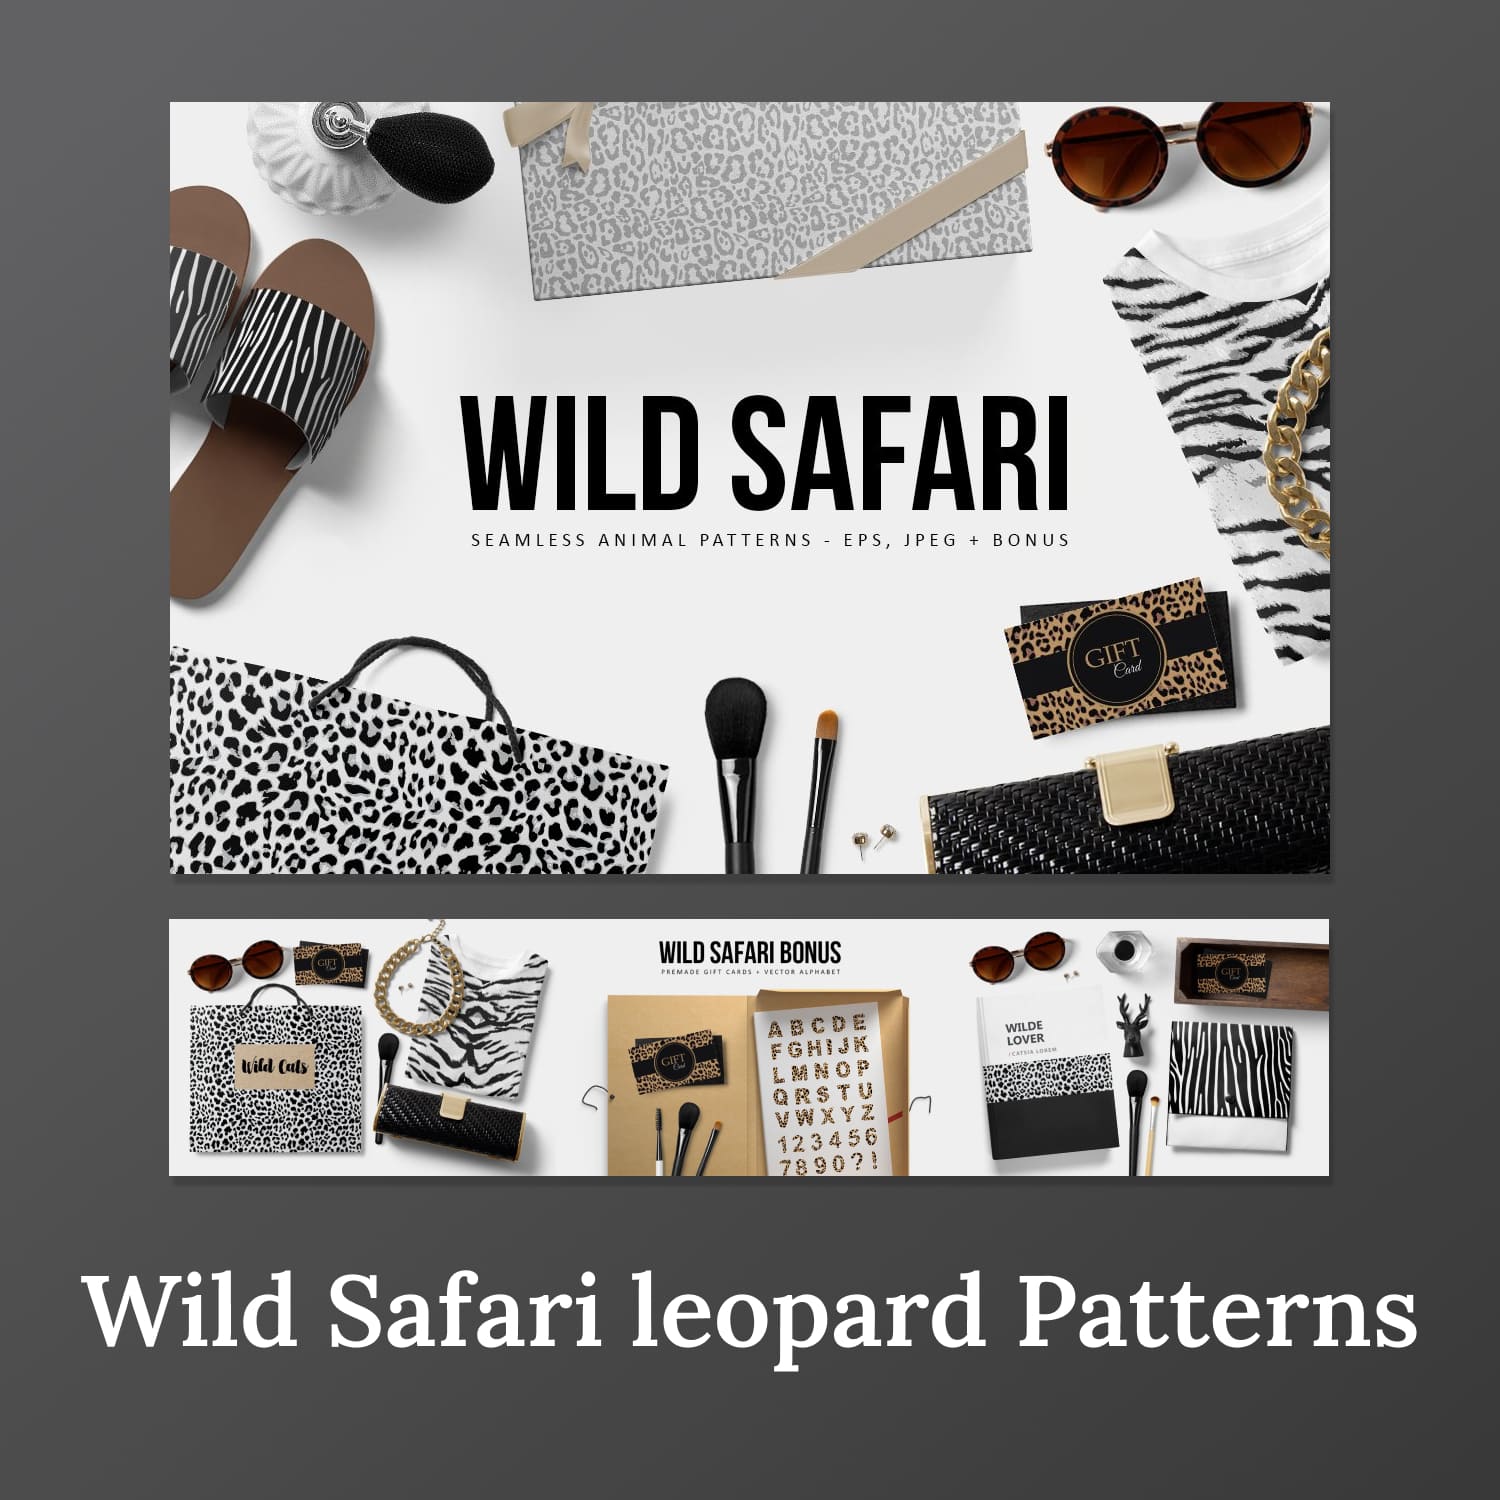 Wild Safari Leopard Patterns 01.